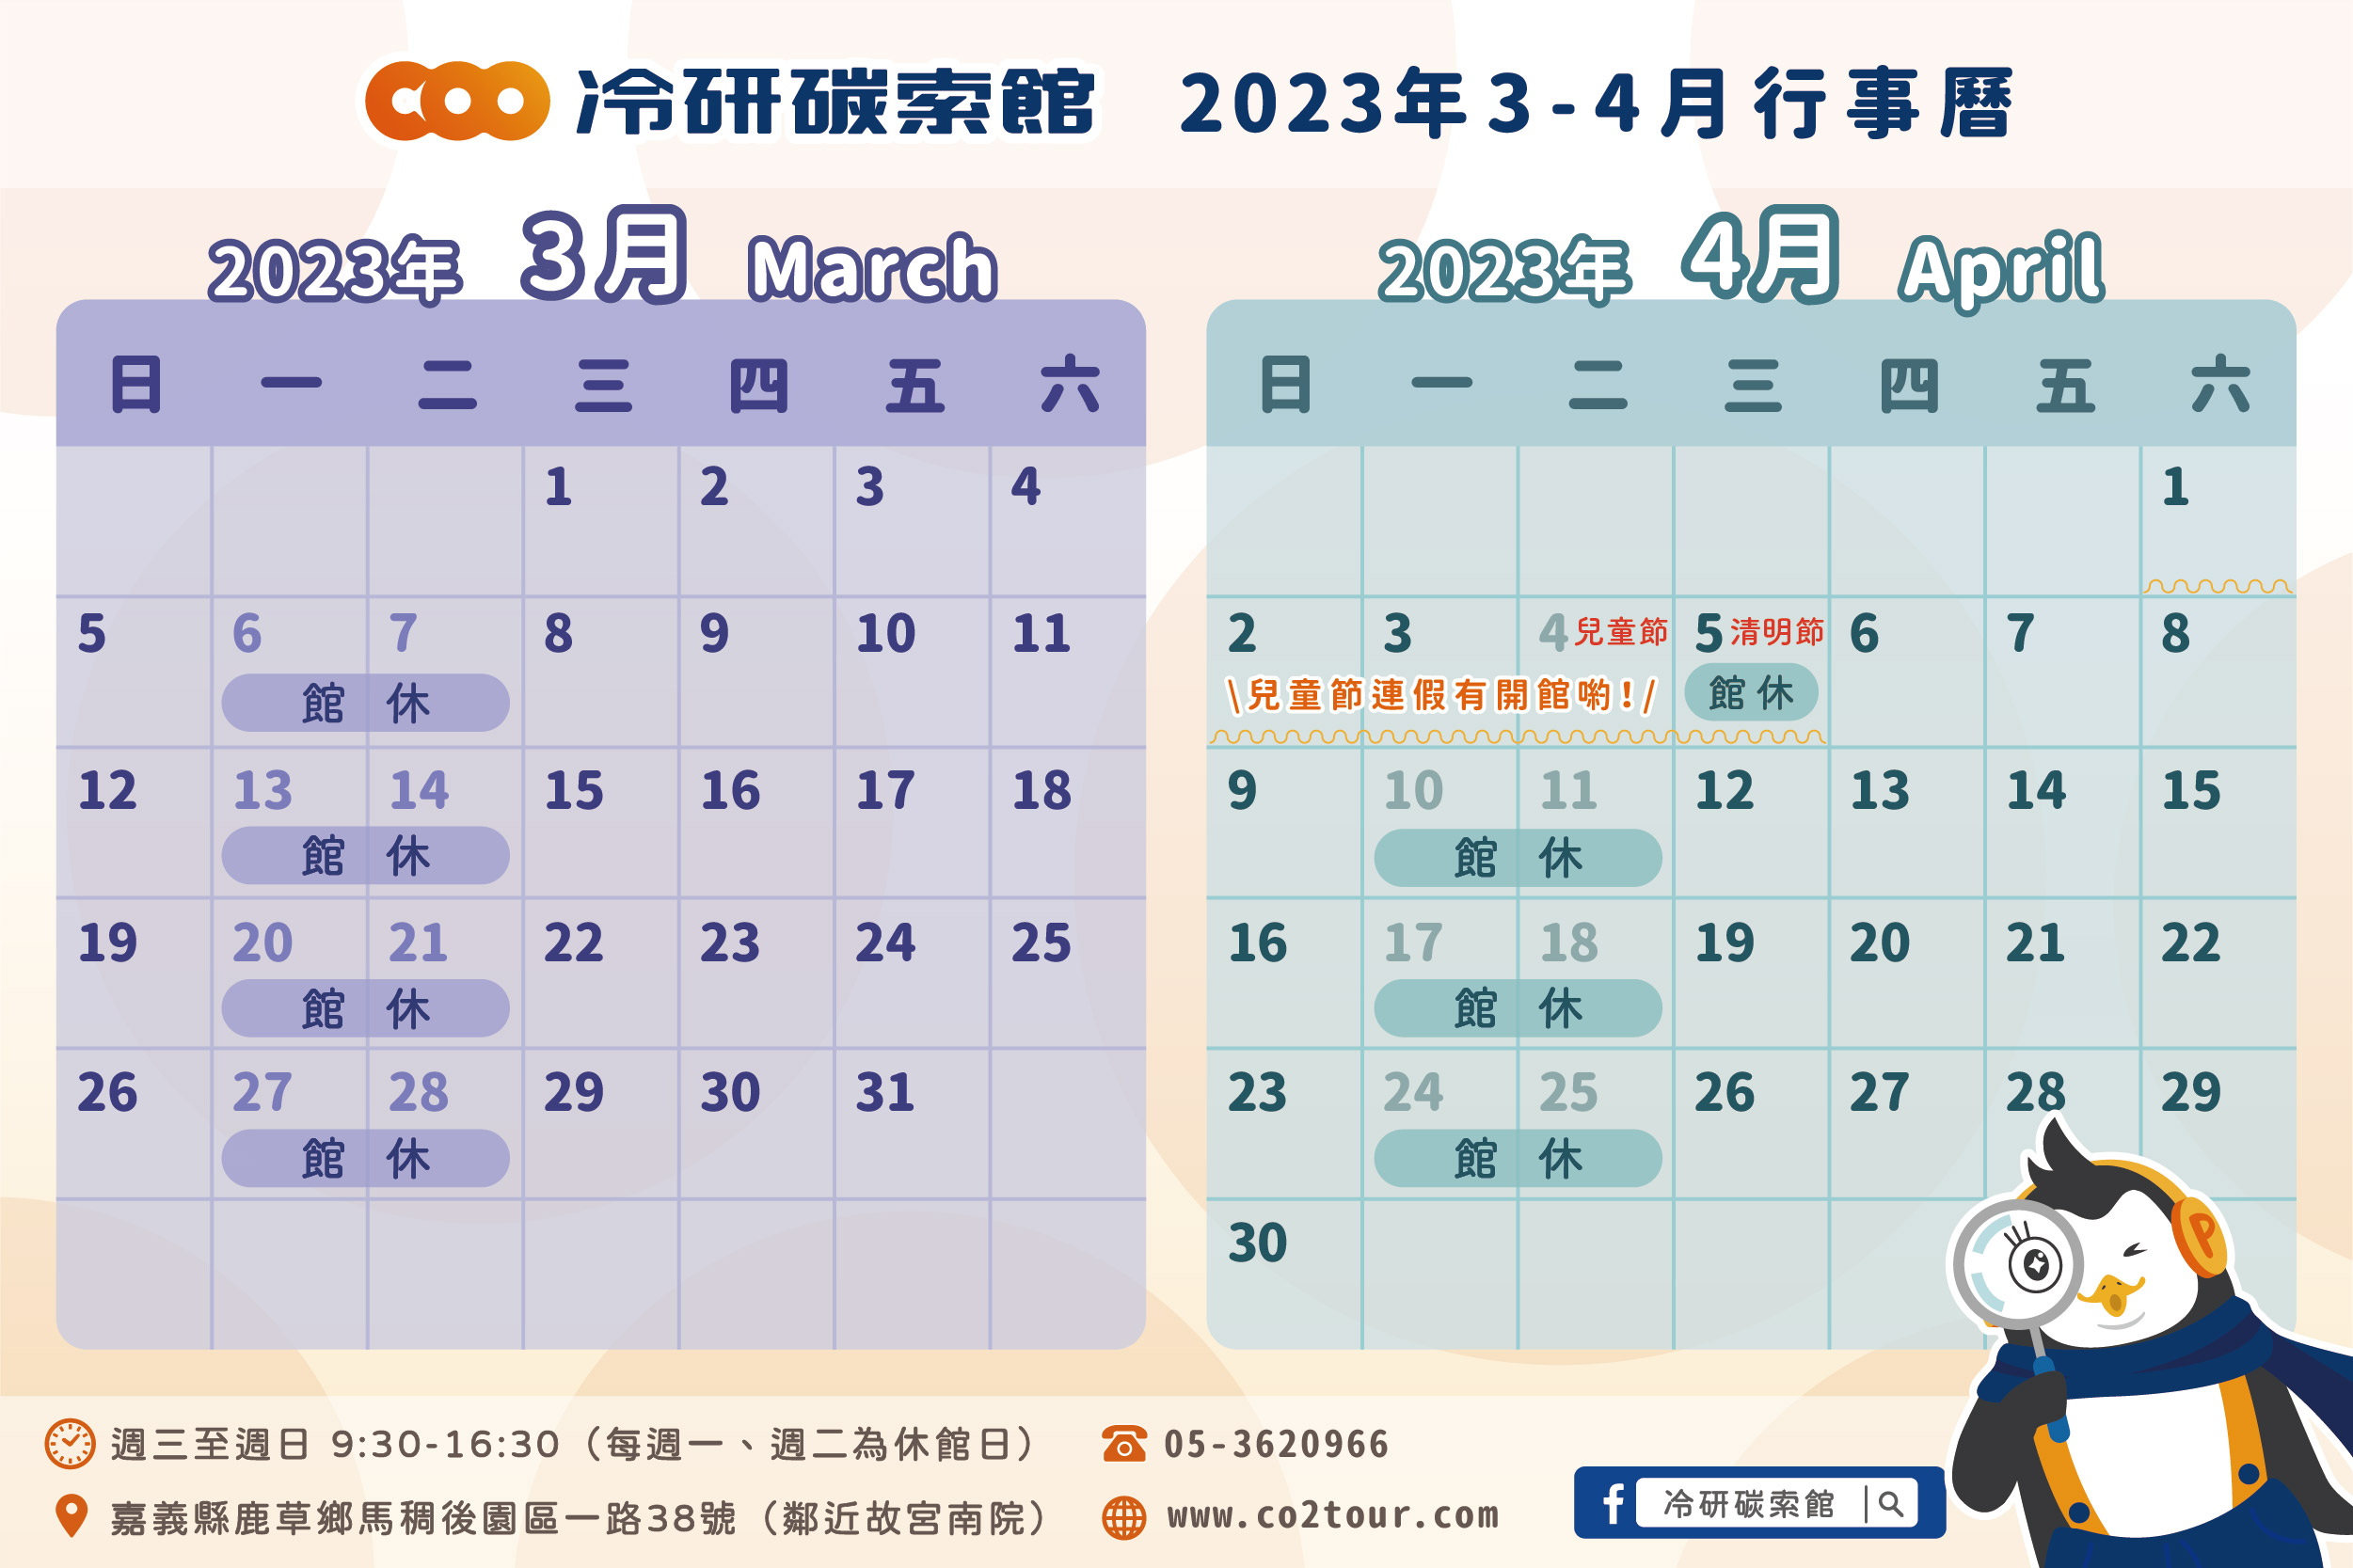 2023年3-4月行事曆